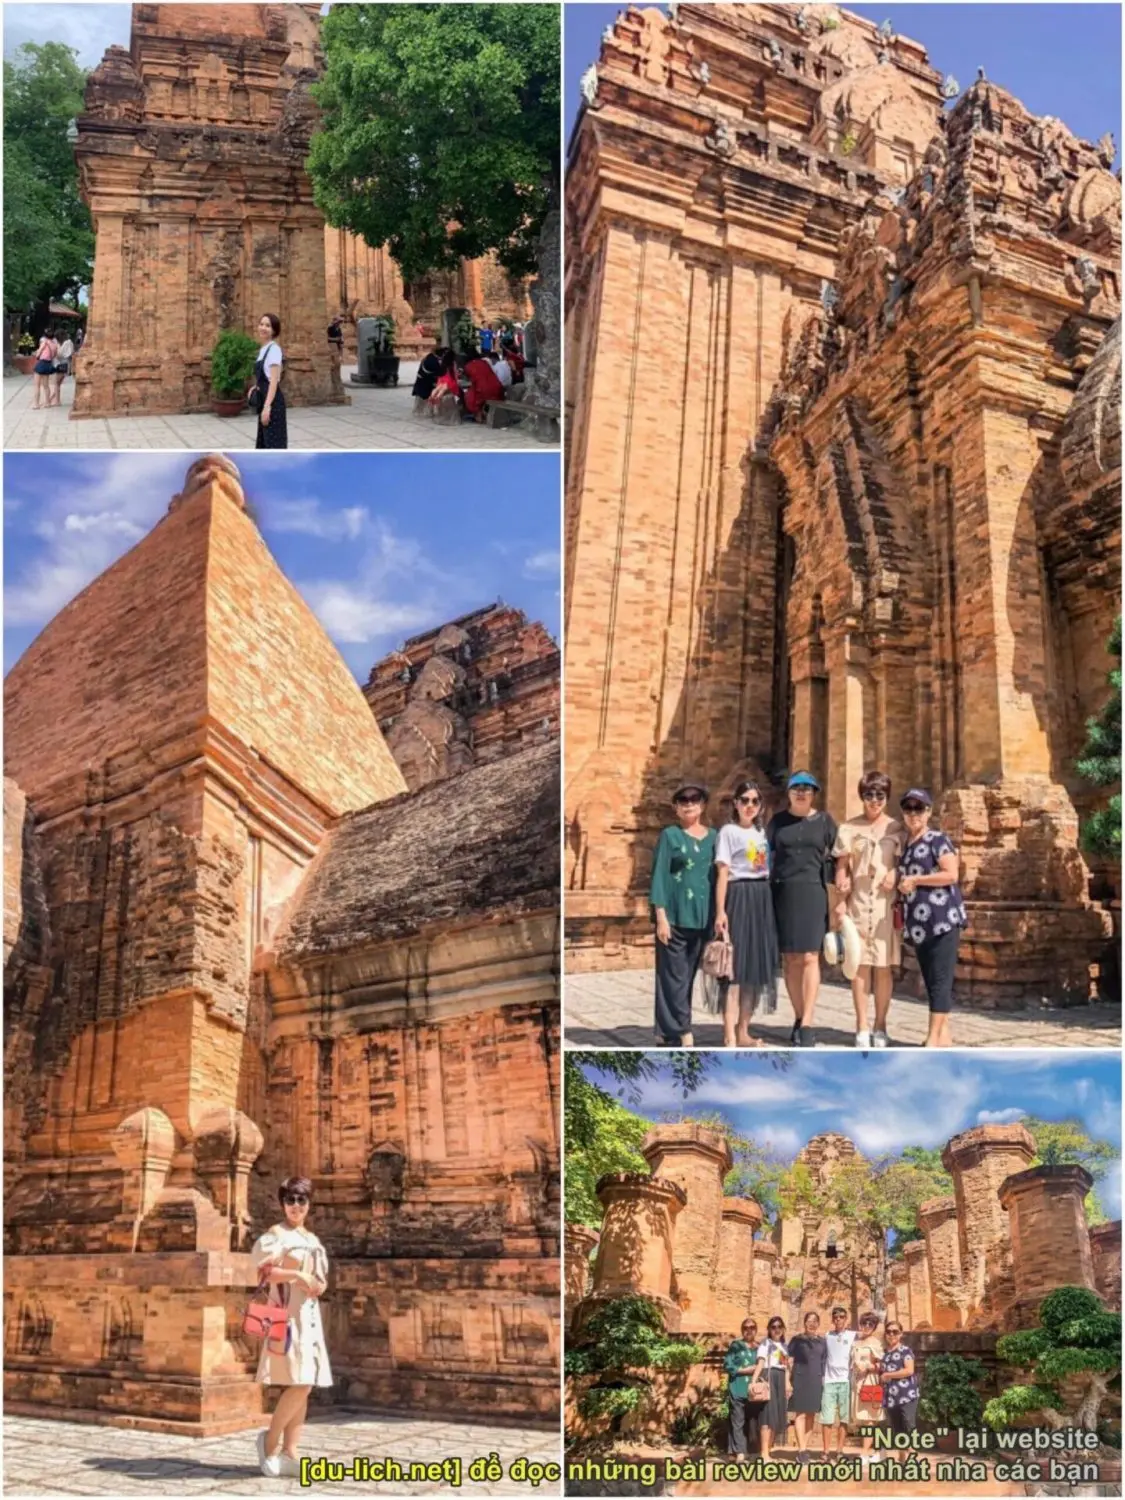 Tháp Bà Ponagar - một di tích lịch sử xưa của vùng đất Nha Trang. Bức ảnh này sẽ giúp bạn hiểu thêm về cách các nền văn hóa khác nhau kết hợp với nhau tạo ra một kiến trúc độc đáo và lịch sử.